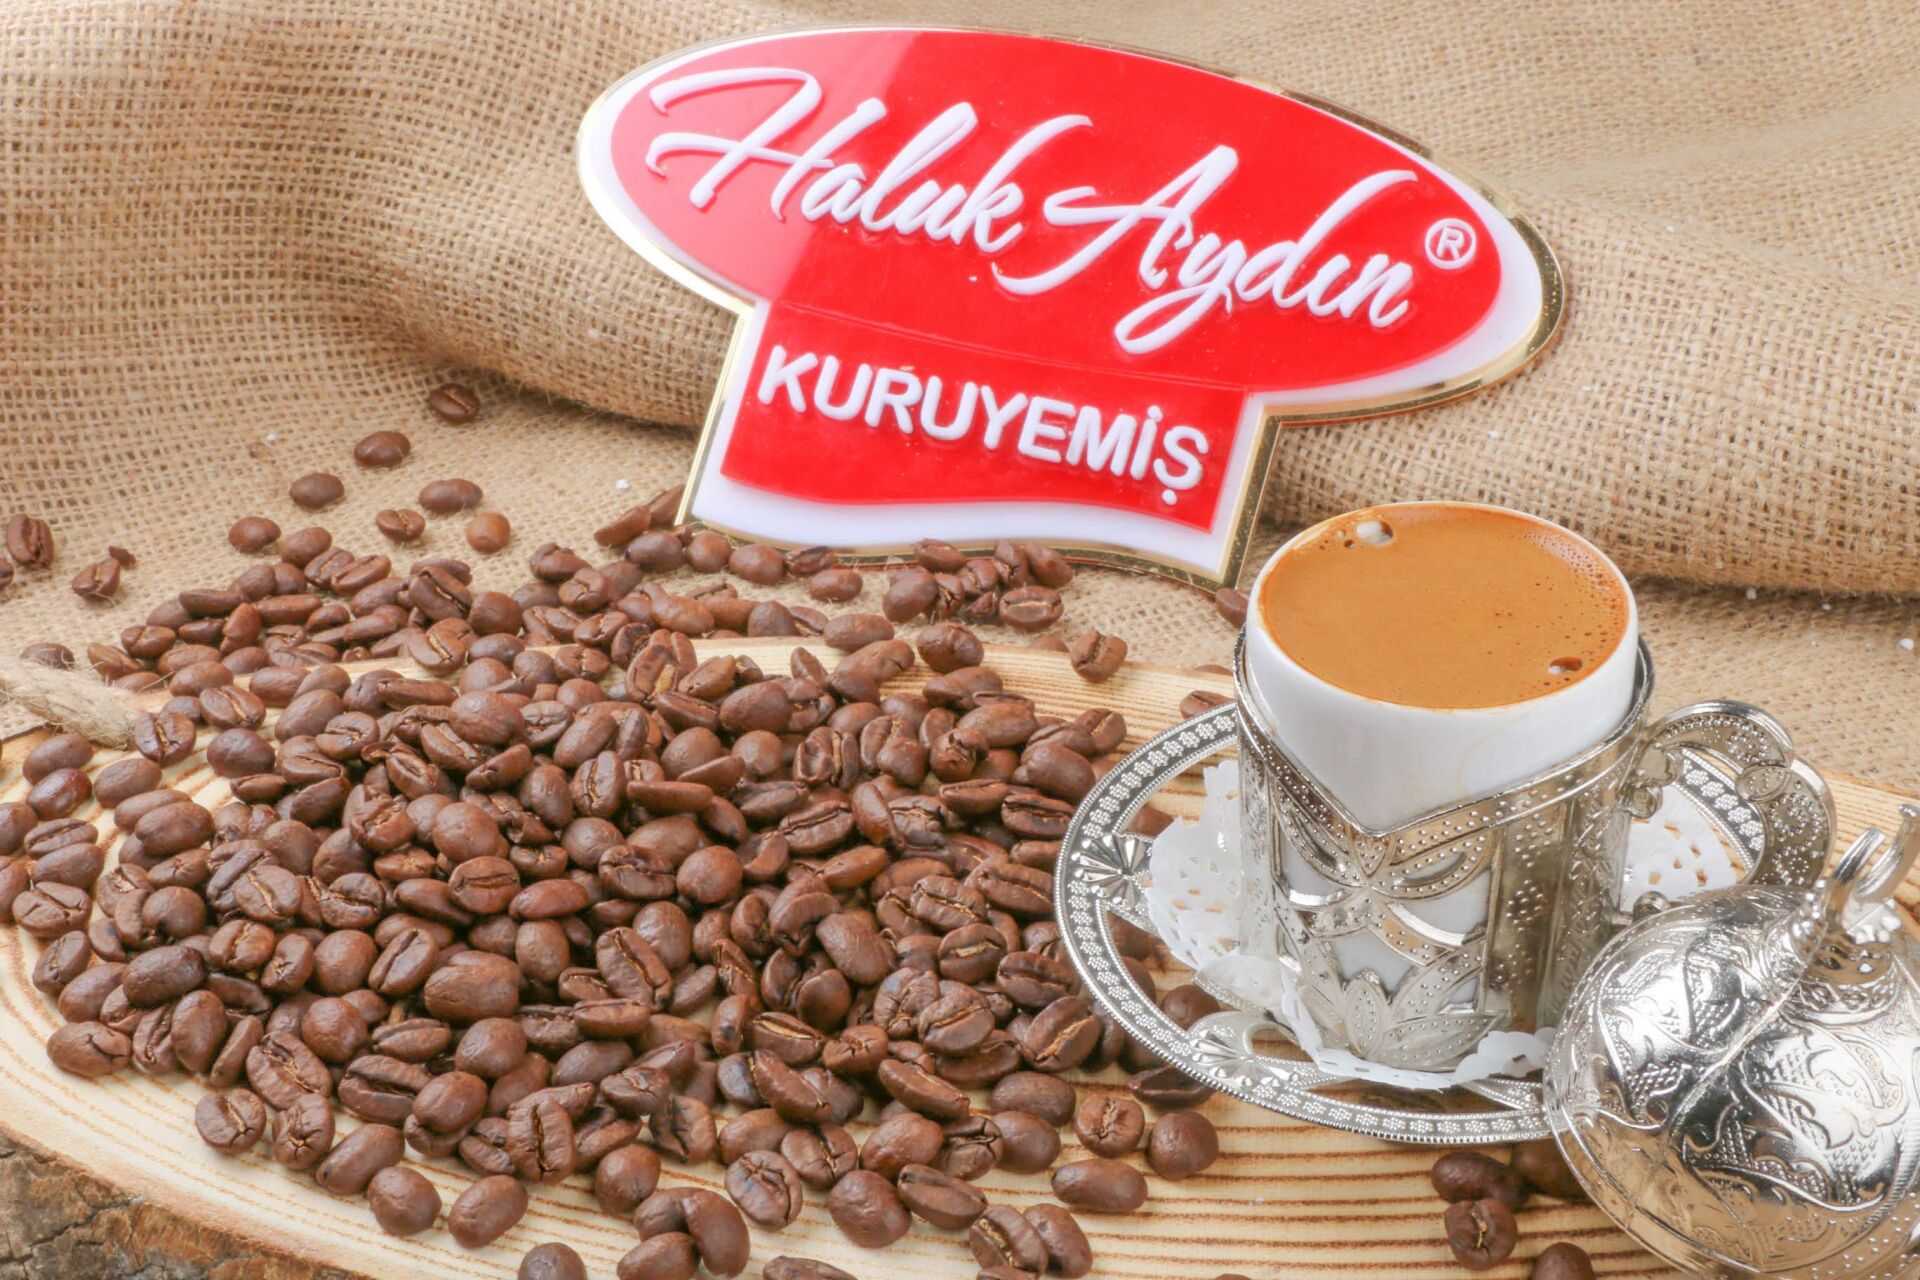 Haluk Aydın Kuruyemiş Türk Kahvesi ÇEKİRDEĞİ 500 Gr